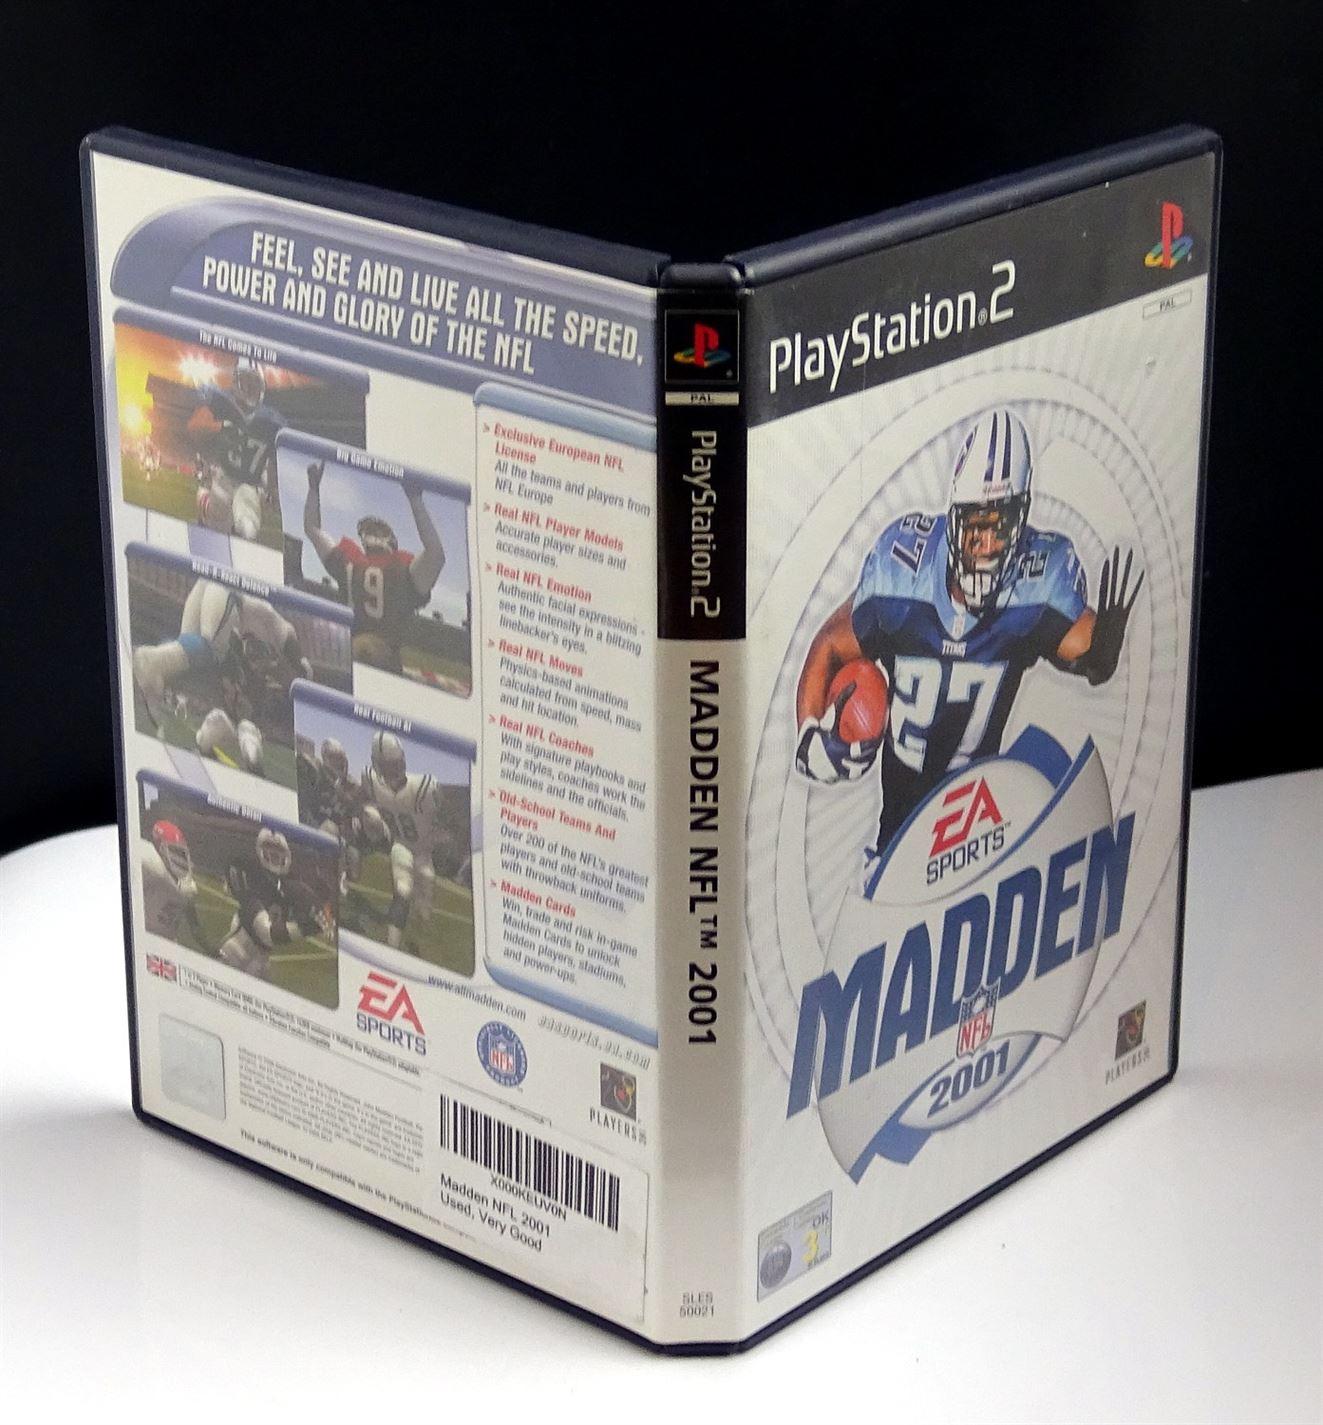 Madden NFL 2001 PS2 (PlayStation 2) - UK Seller